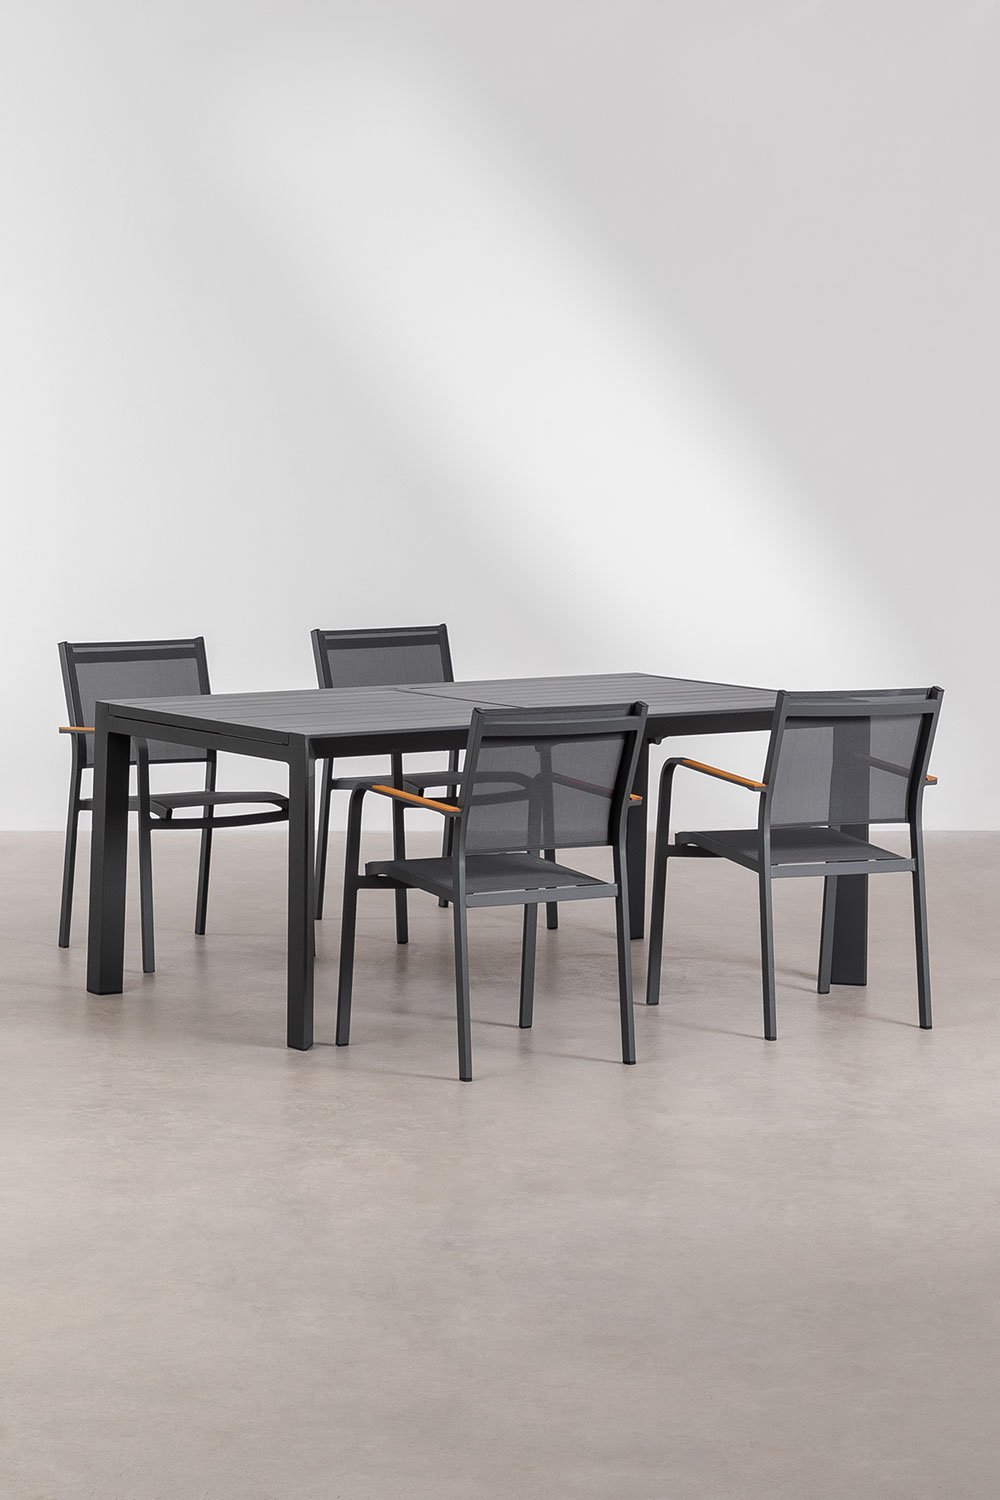 Rozkładany prostokątny stół aluminiowy (180-240x100 cm) Starmi i 4 aluminiowe krzesła ogrodowe Archer, obrazek w galerii 1